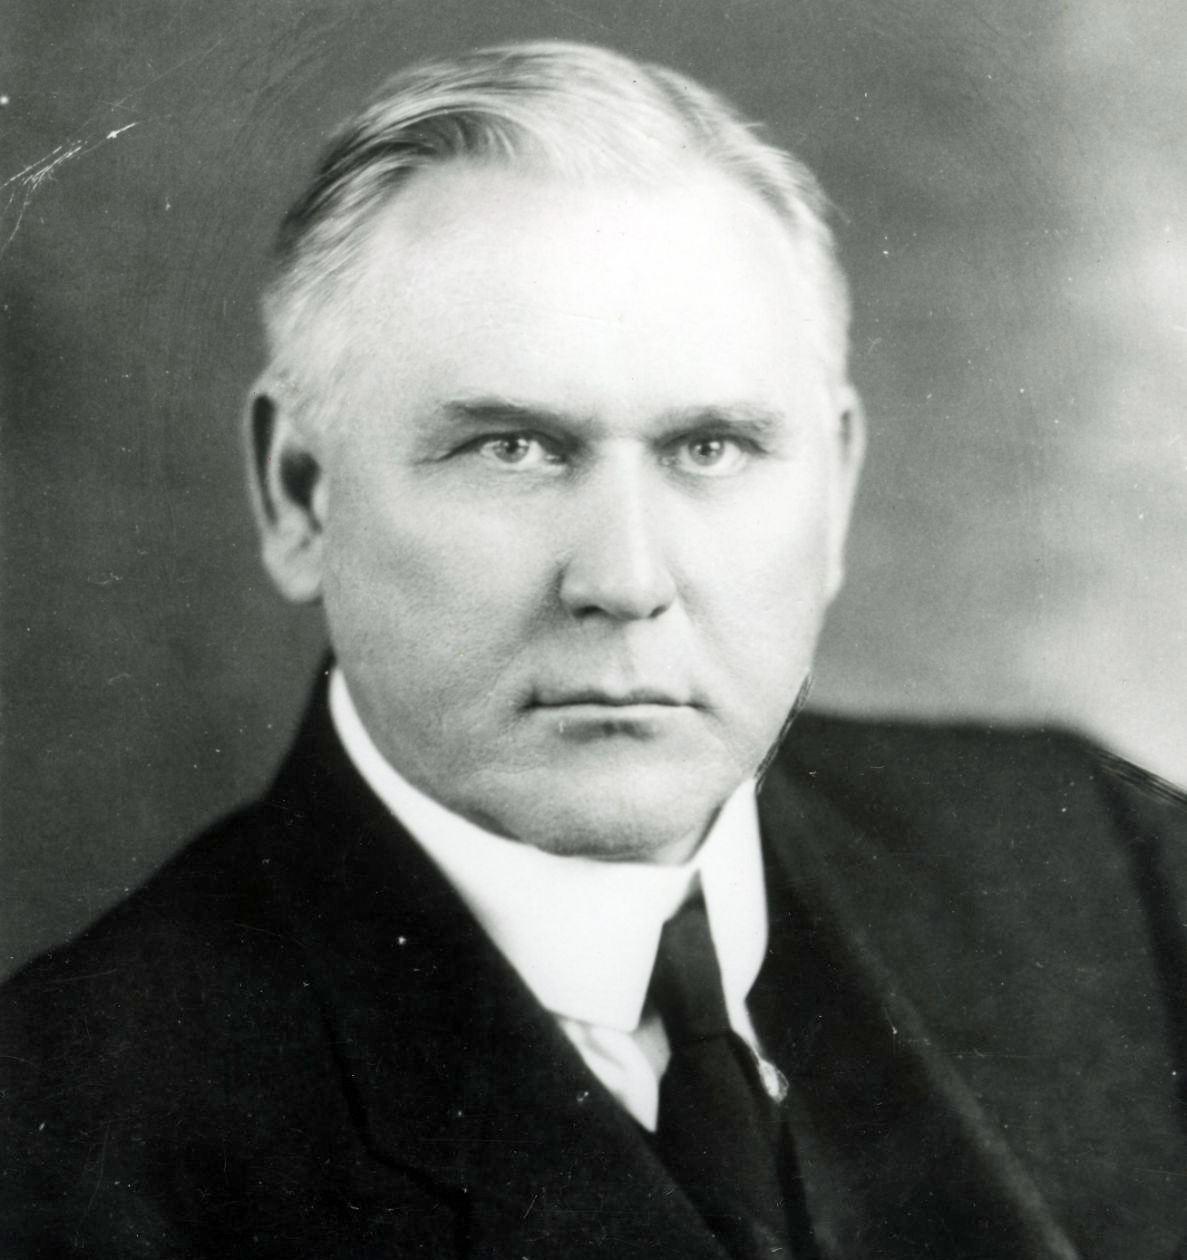 Dr. George W. Truett